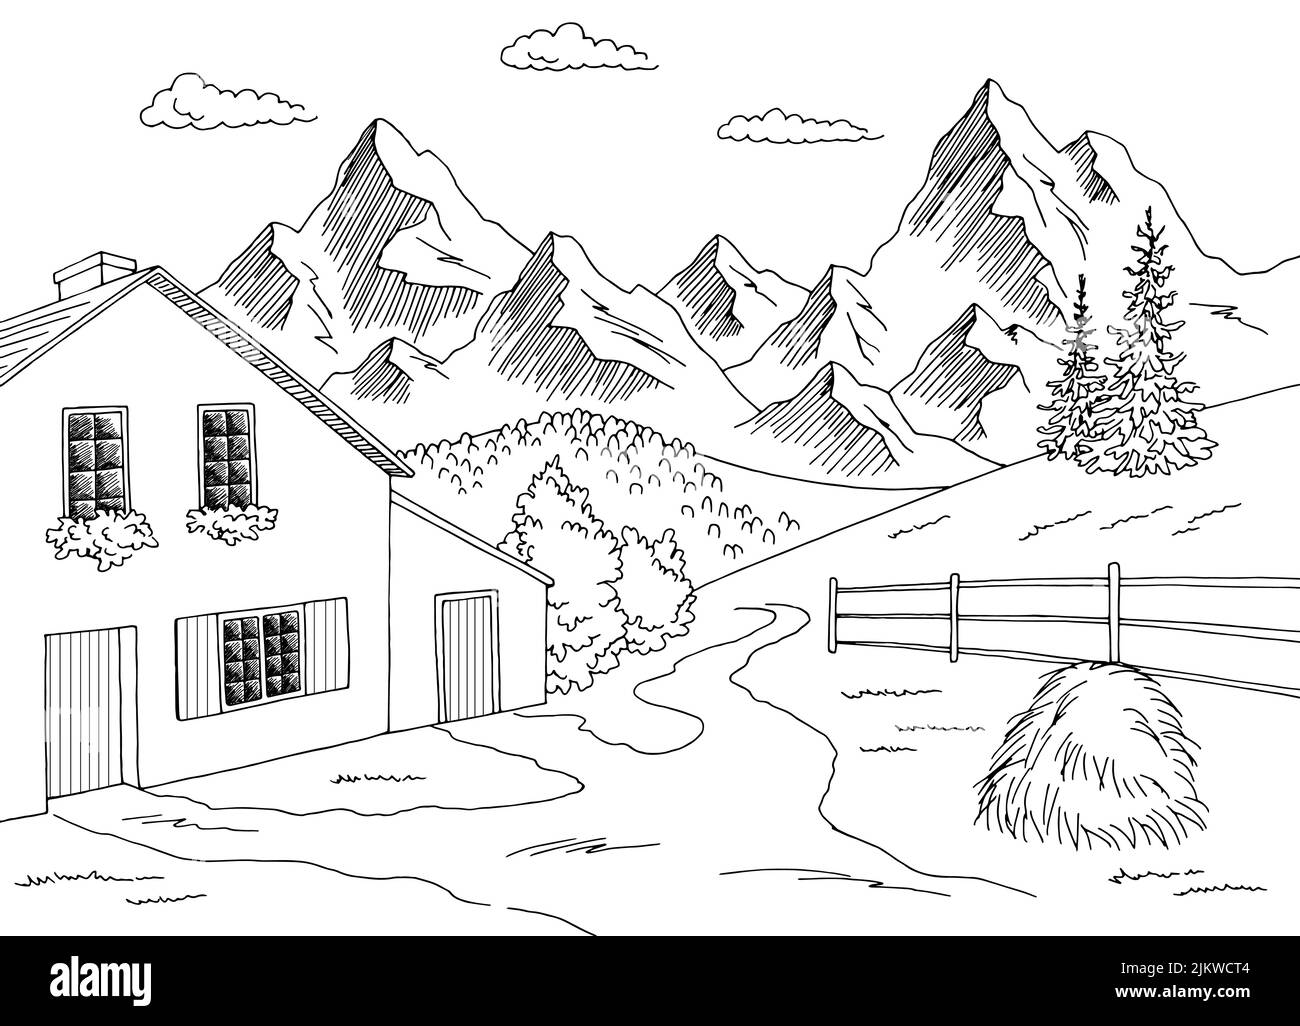 Village montagne graphique noir blanc paysage rural esquisse illustration vecteur Illustration de Vecteur